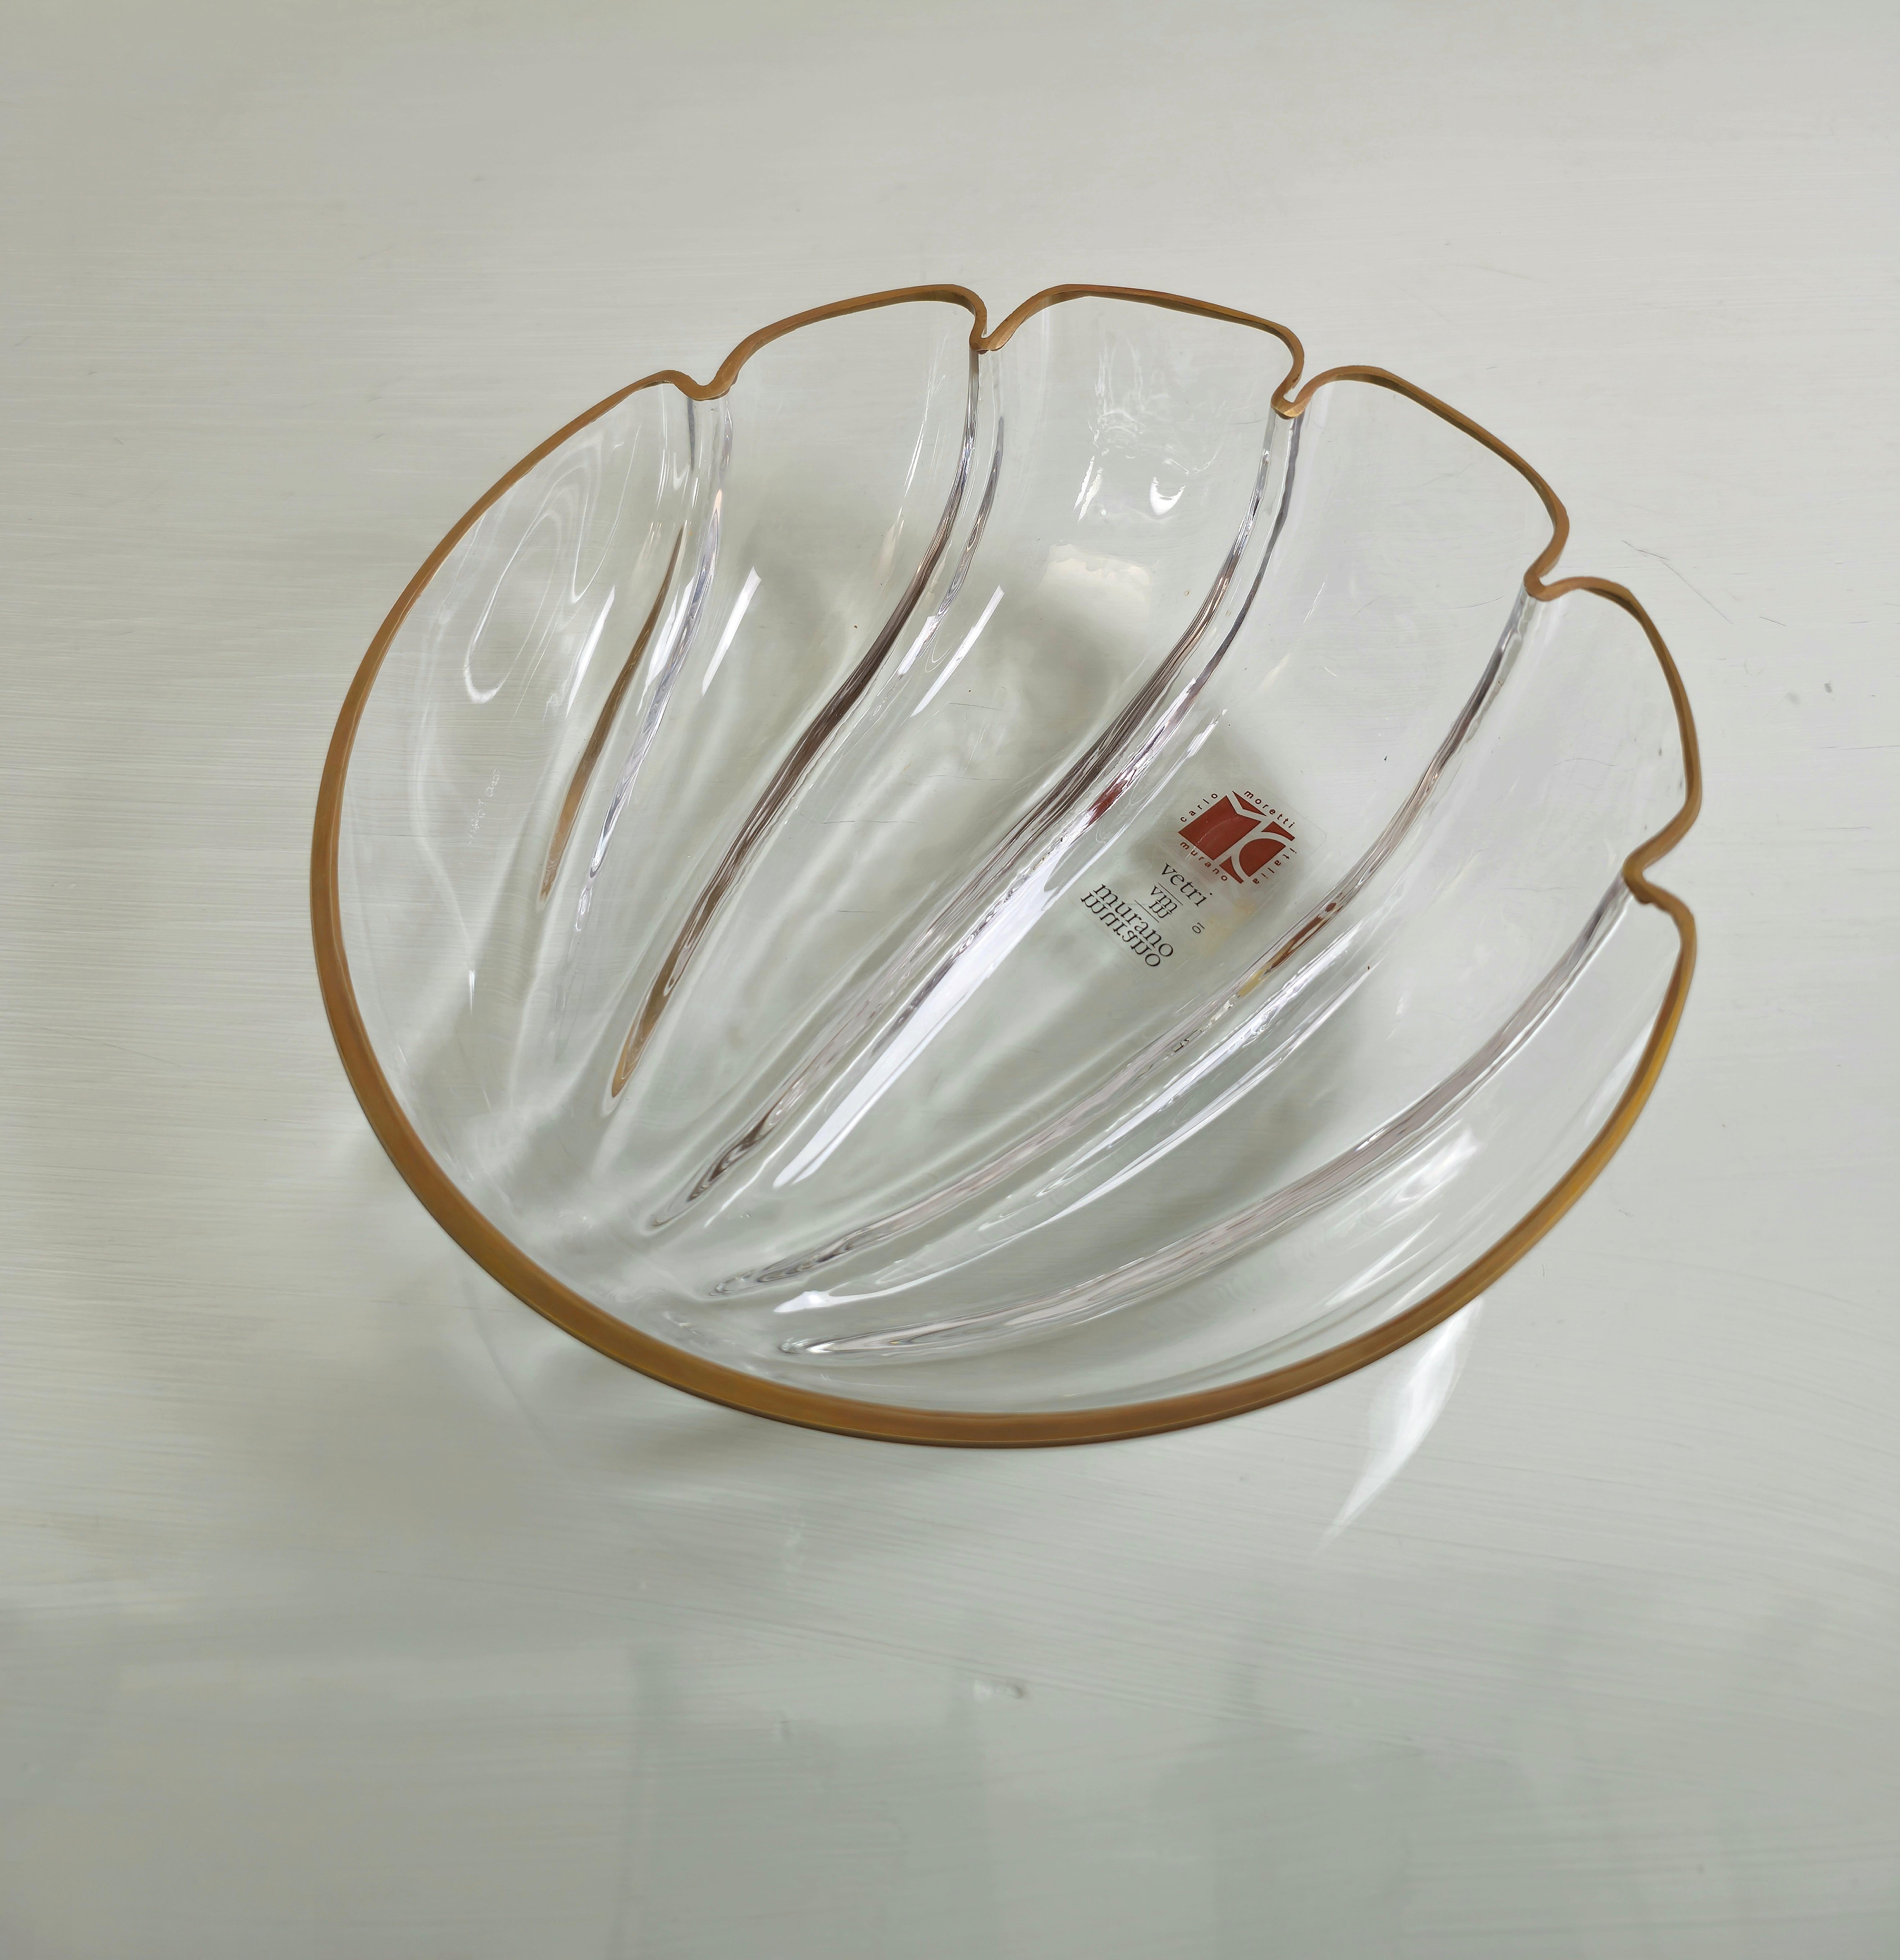 20th Century Decorative Object Bowl Vide-Poche Carlo Moretti Murano Glass Midcentury 1960s For Sale